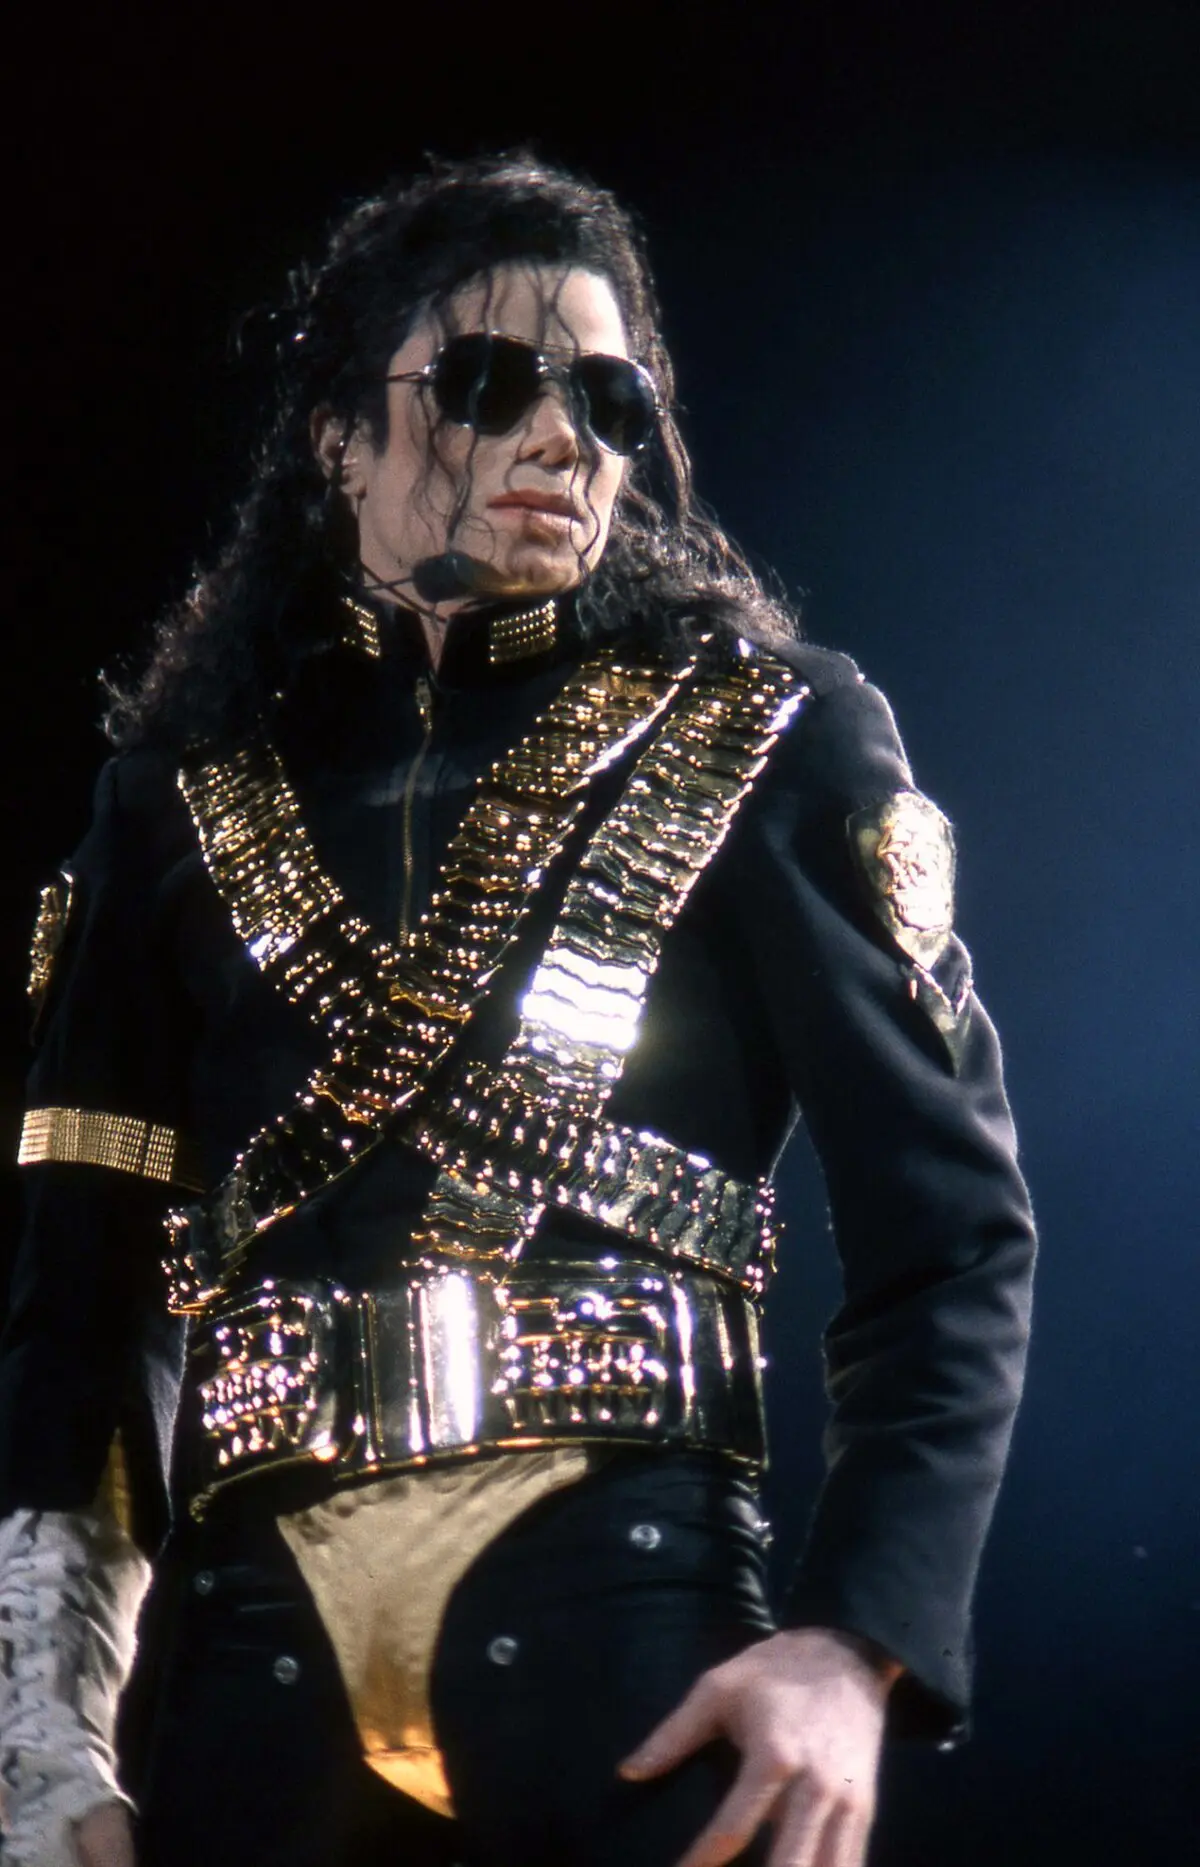 biografia de michael jackson resumida - Qué hizo Michael Jackson antes de ser famoso